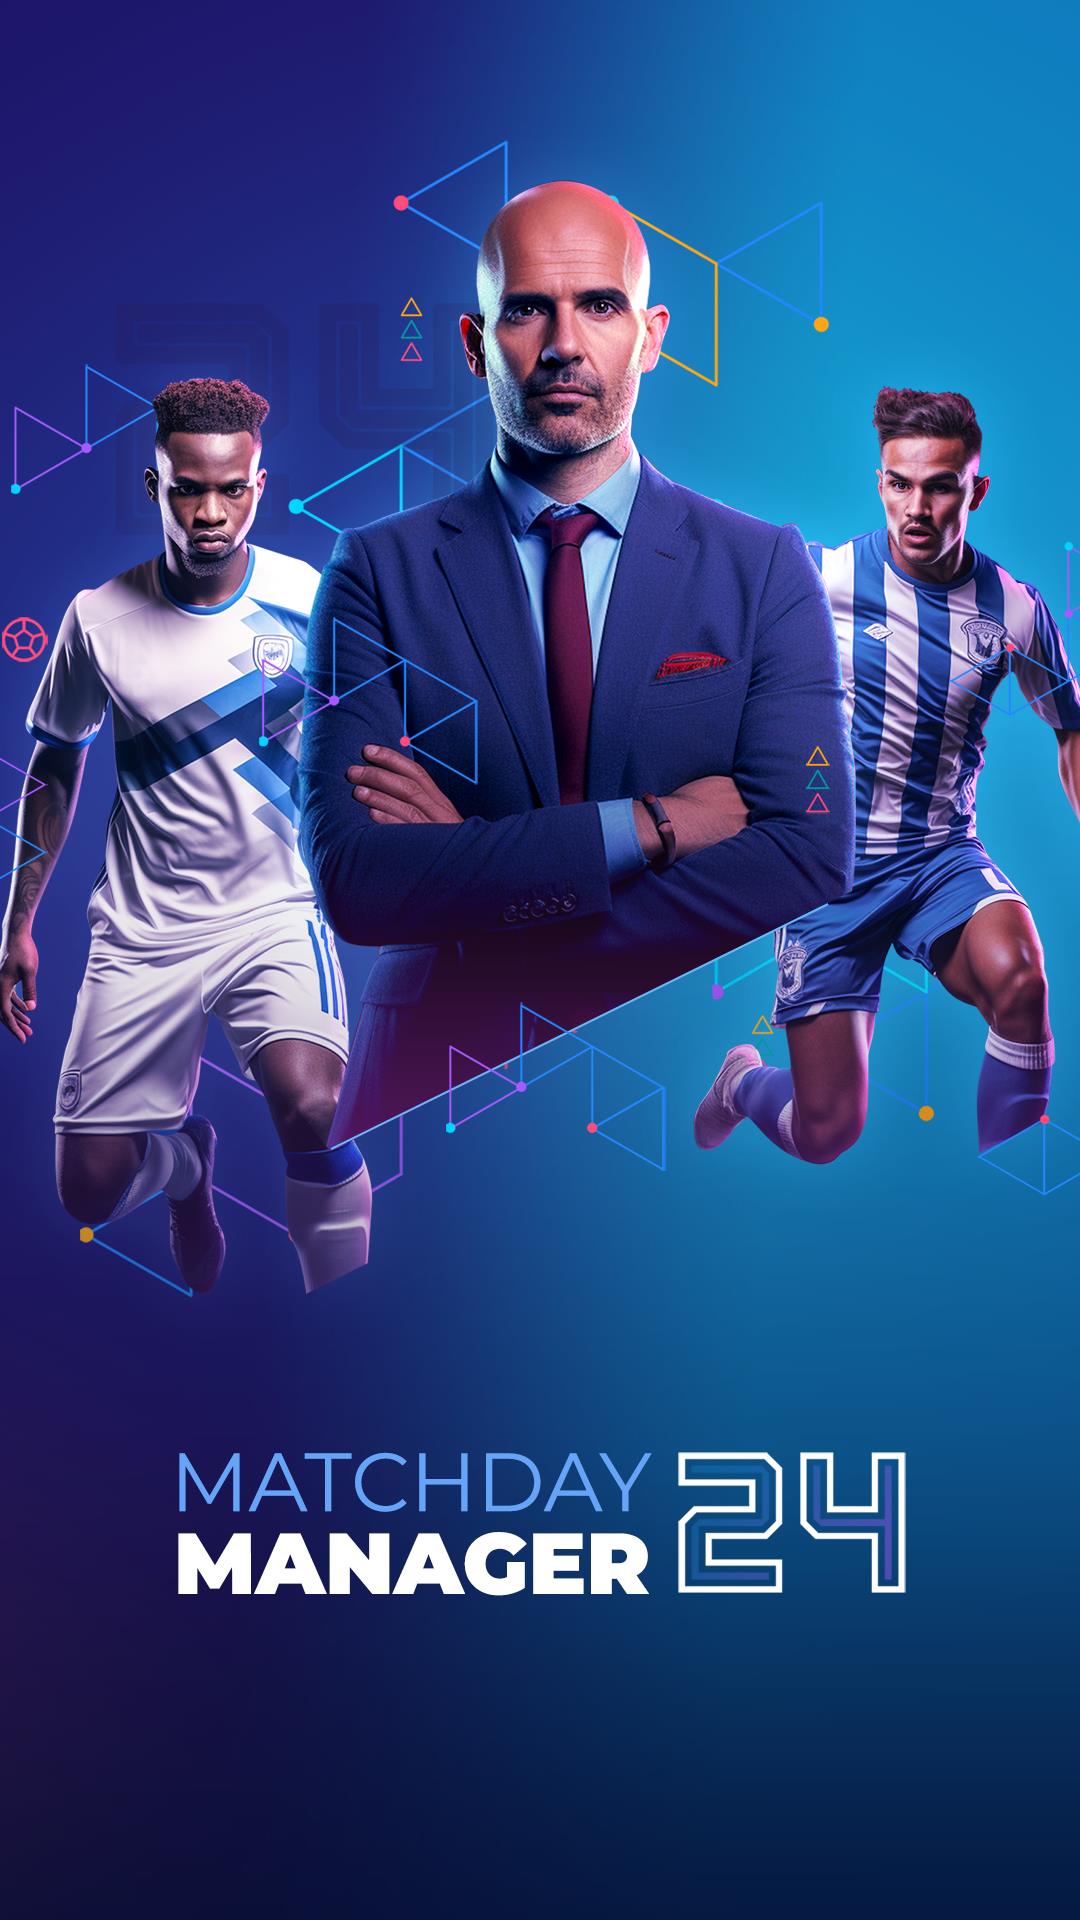 Soccer - Matchday Manager 24 Screenshot 7